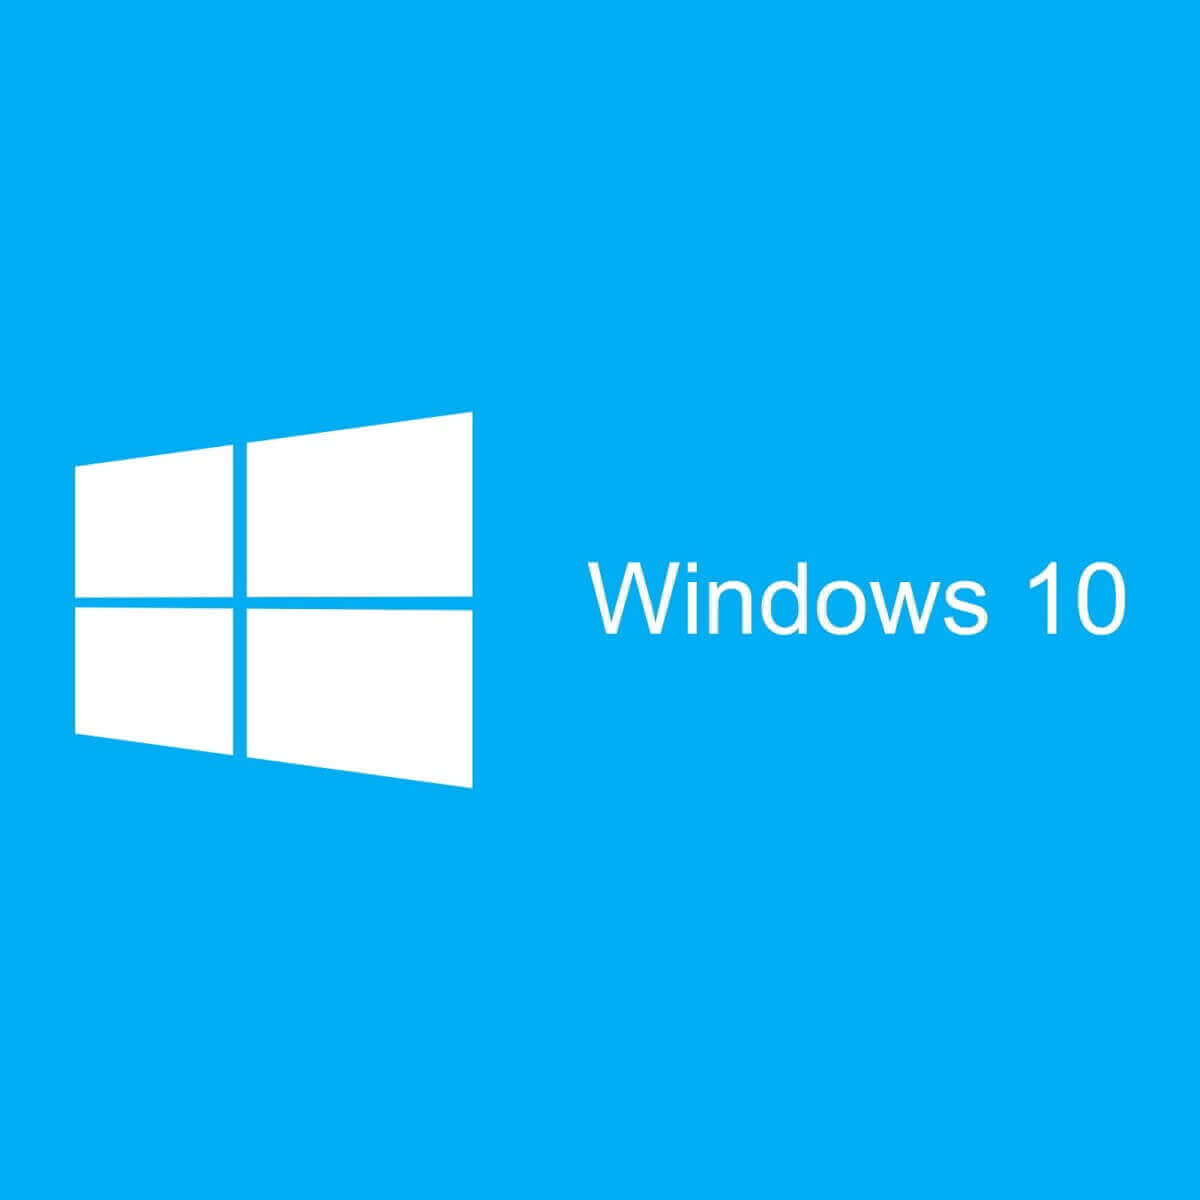 Desinstale fácilmente las aplicaciones de Windows 10 para todos los usuarios